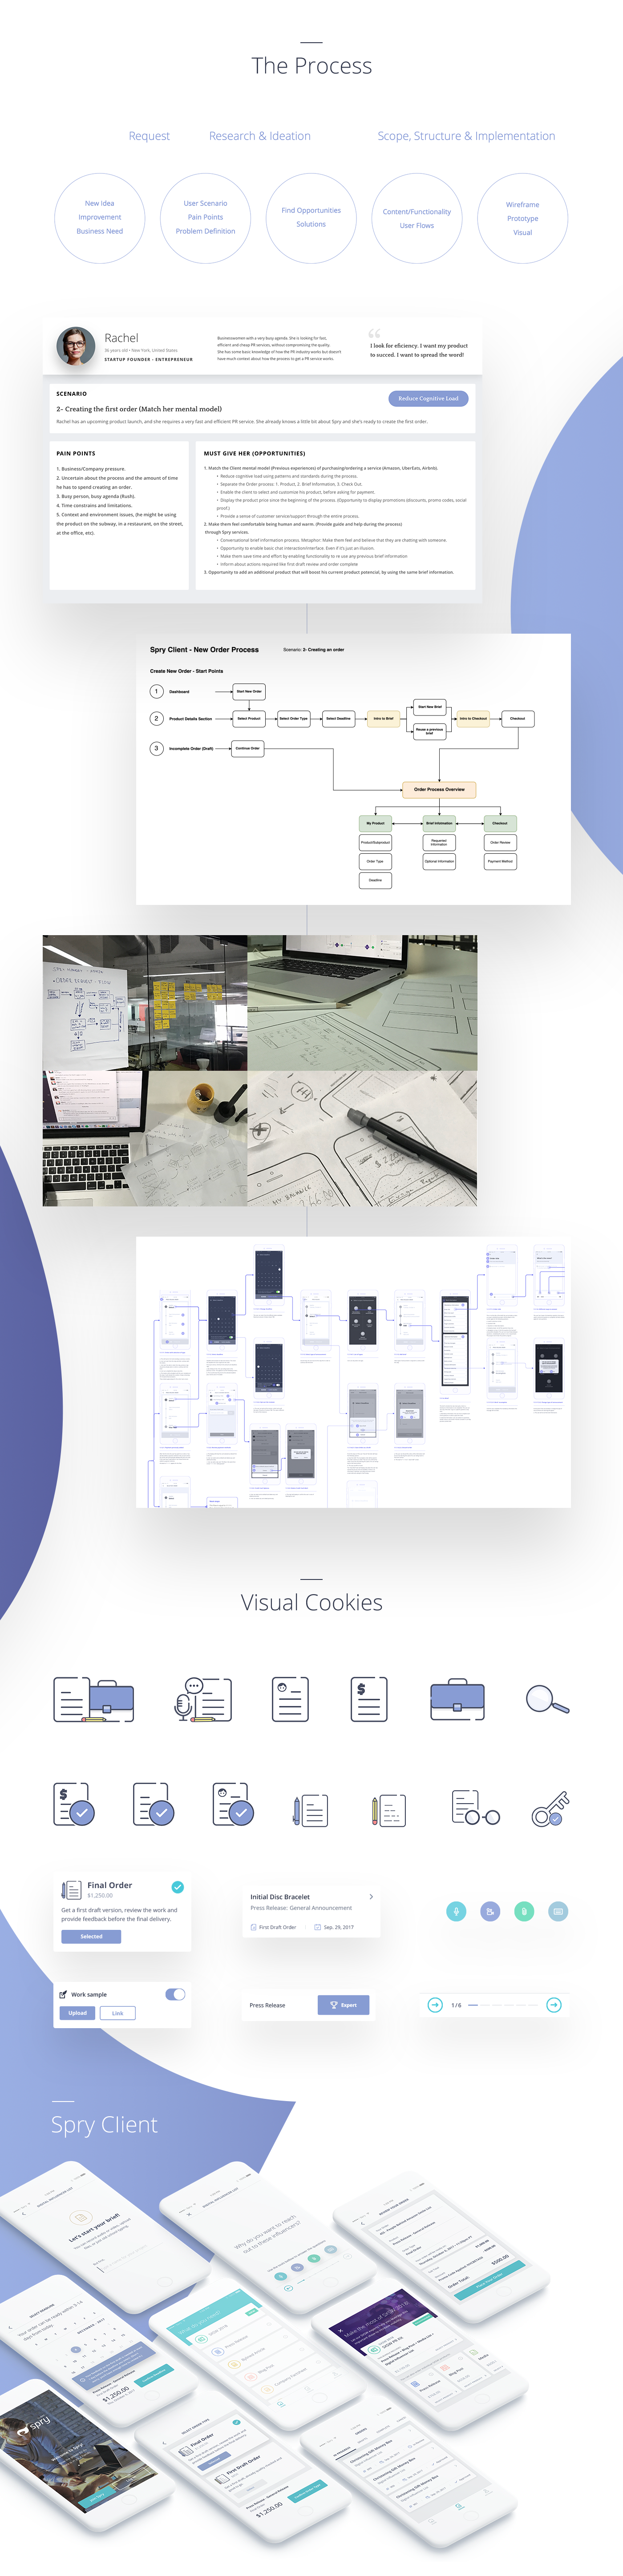 pr ui design UX design interaction product design  Mobile app ios visual design mobile